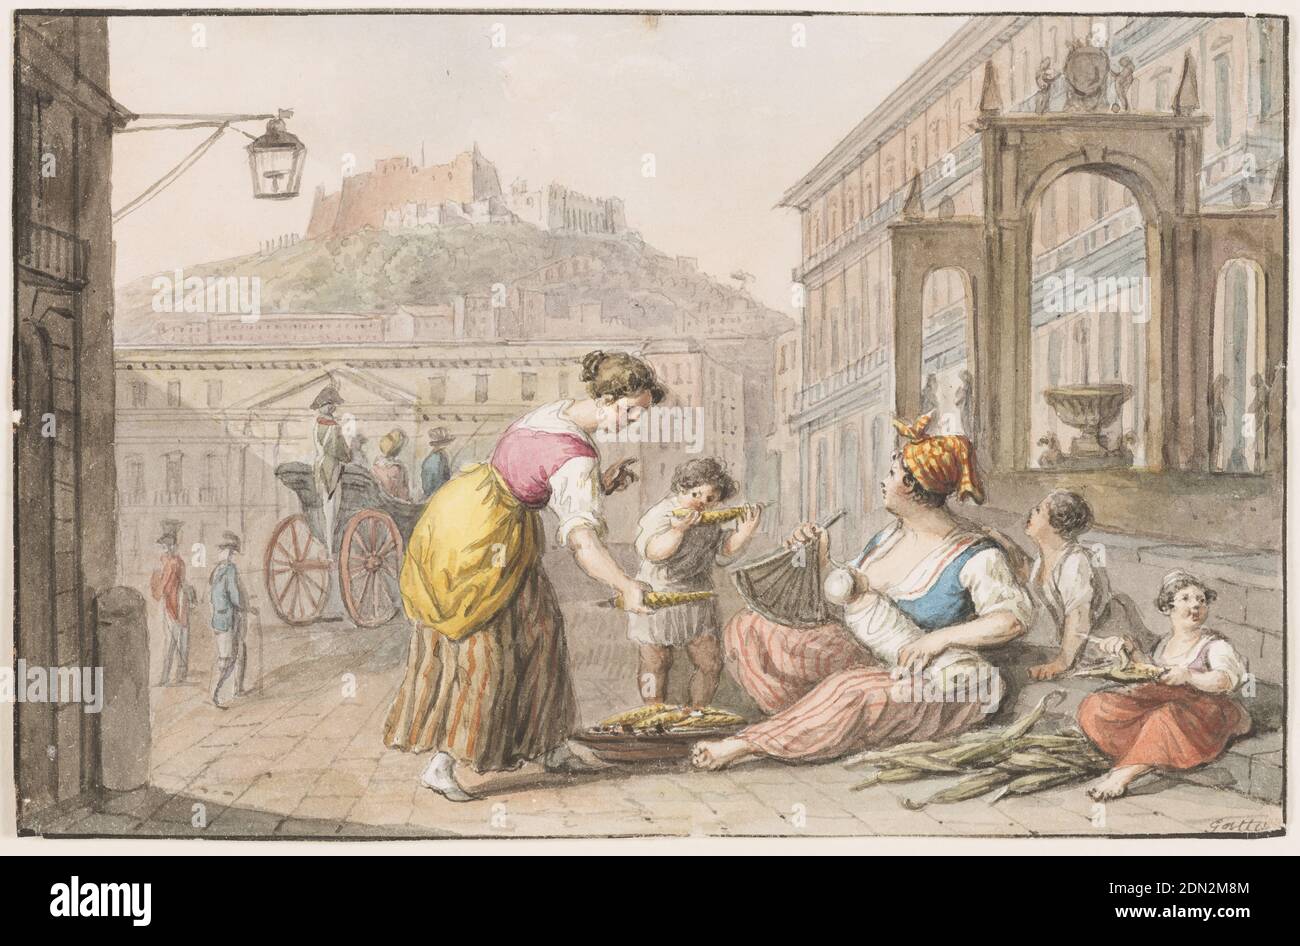 Wasserfarbe; EINE Frau, die gerösteten Mais verkauft, Saverio della Gatta, italienisch, 1777 - 1829, Feder und schwarze Tinte und Wasserfarben auf Papier., Horizontales Rechteck. Eine Frau mit einem Baby und zwei größeren Kindern sitzt auf dem Bürgersteig in der südöstlichen Ecke der Piazza del Plebiscito in Neapel. Ein Gericht mit Mais liegt vor ihr. Ein Kind isst einen, eine Frau nimmt einen. Auf dem Platz sind eine Kutsche, ein Soldat, ein Geher zu sehen. Im Hintergrund sind Castel S. Elmo und S. Martino zu sehen. Rahmenlinien. Unterschrift: 'Gatta' in Stift und Tinte unten rechts., Italien, 1827, Zeichnung Stockfoto